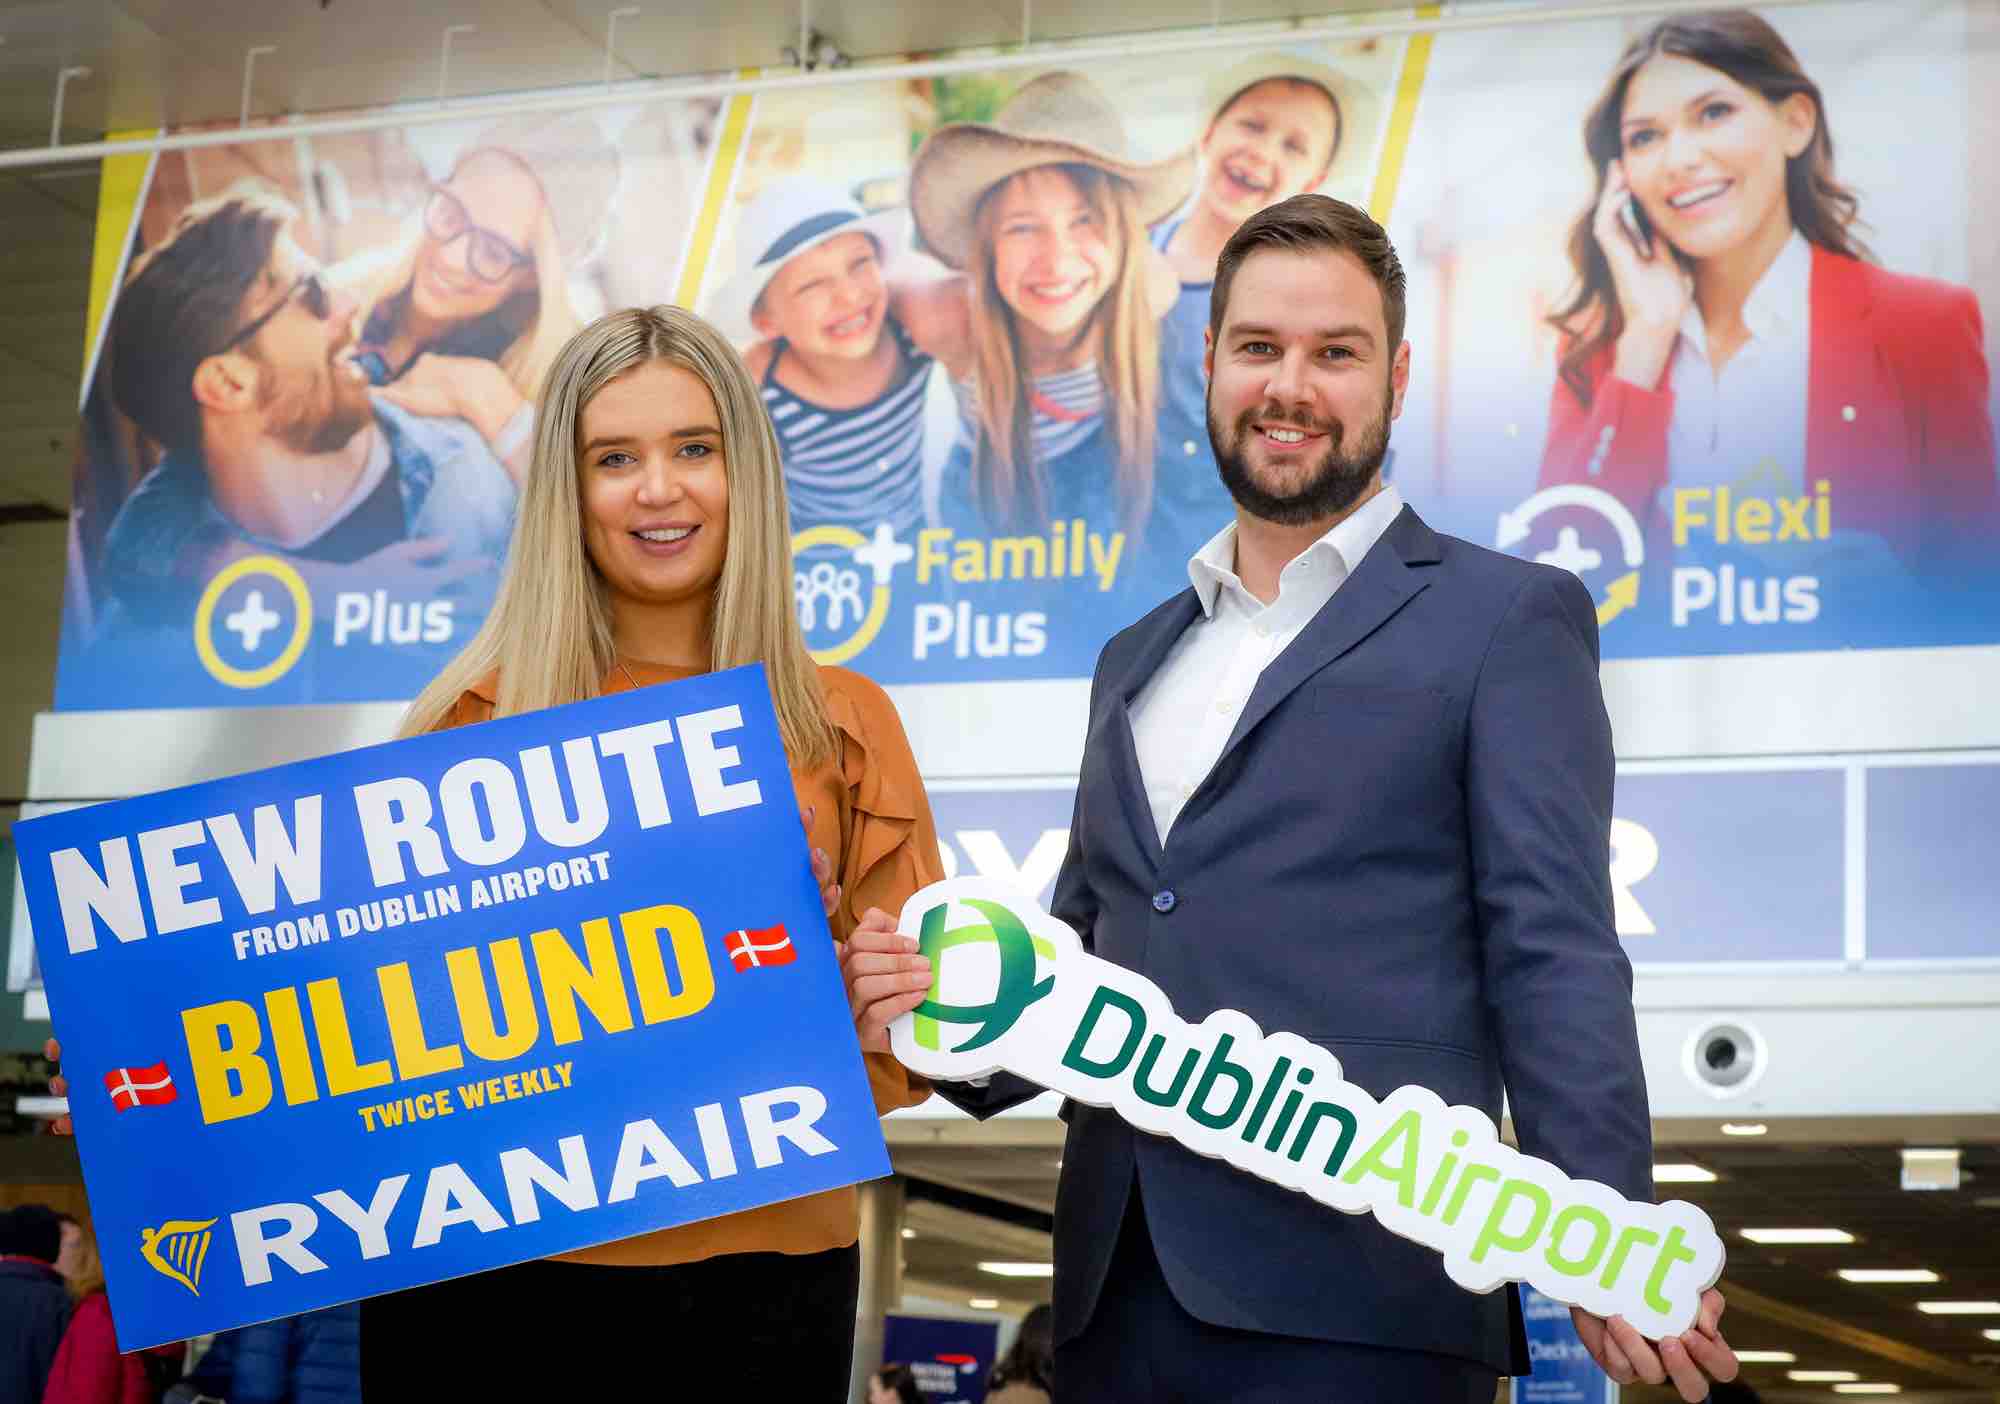 RYANAIR’S FIRST DUBLIN FLIGHT TO BILLUND TAKES OFF